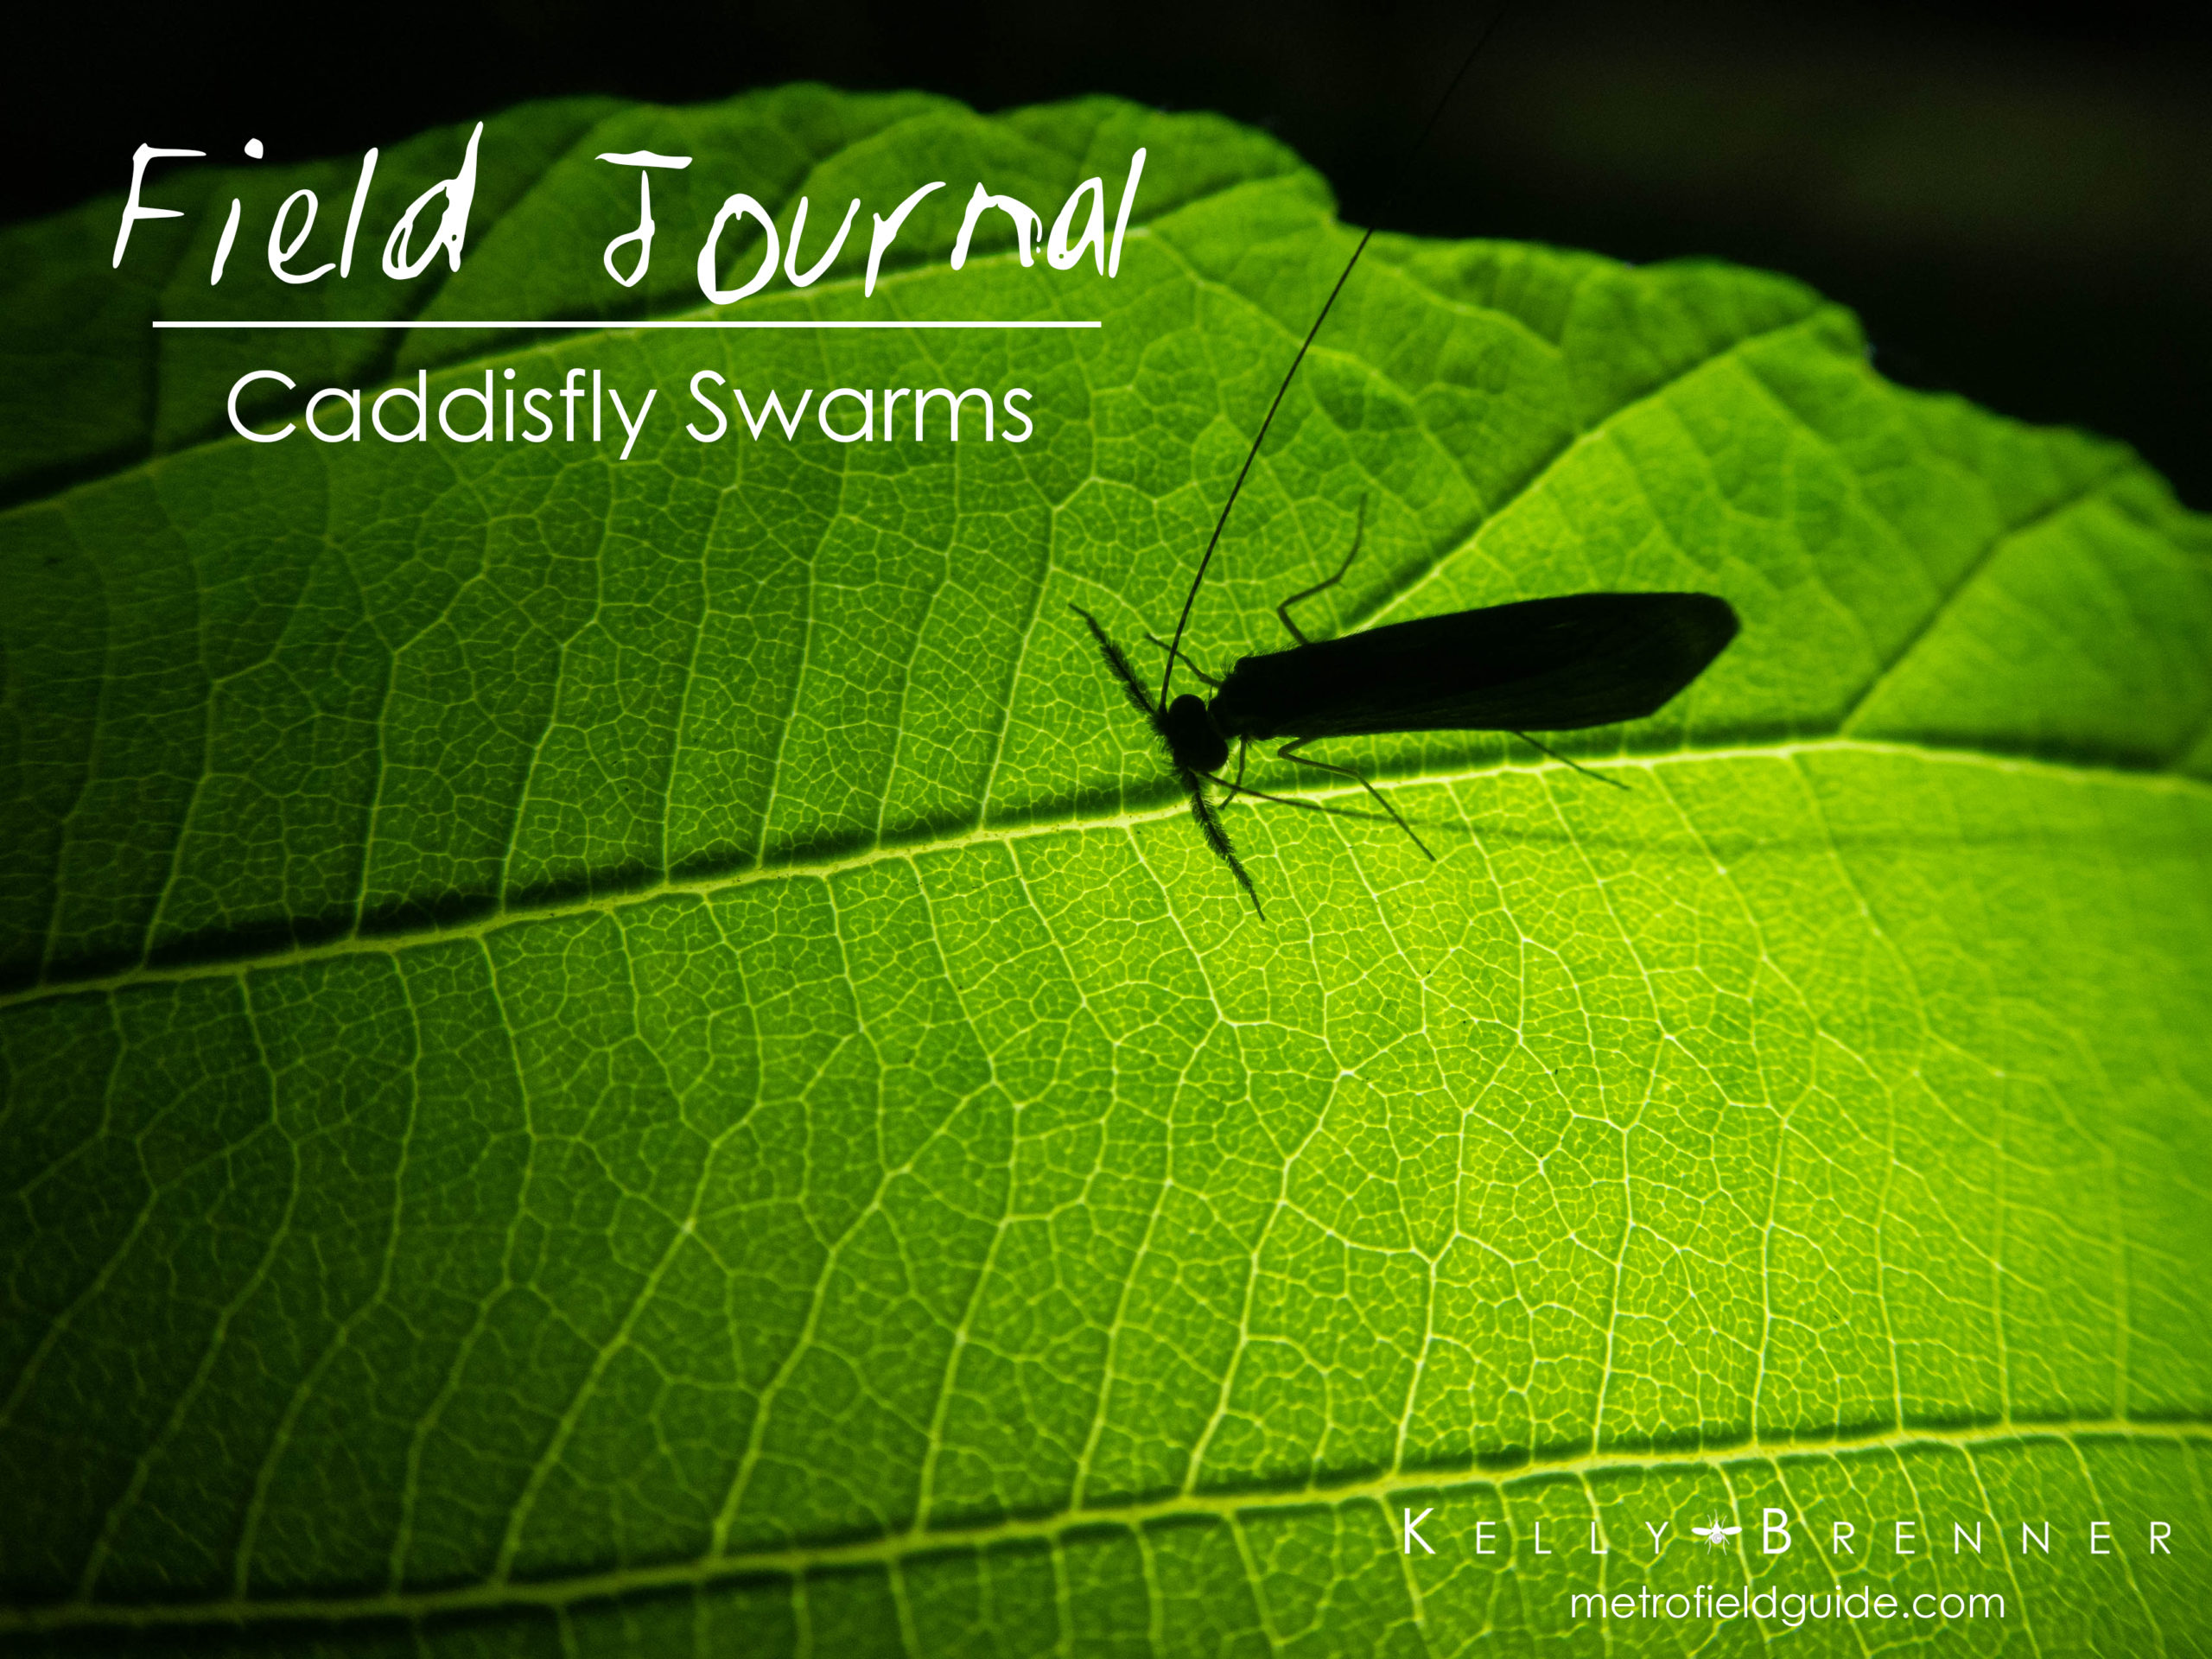 Field Journal: Caddisfly Swarms